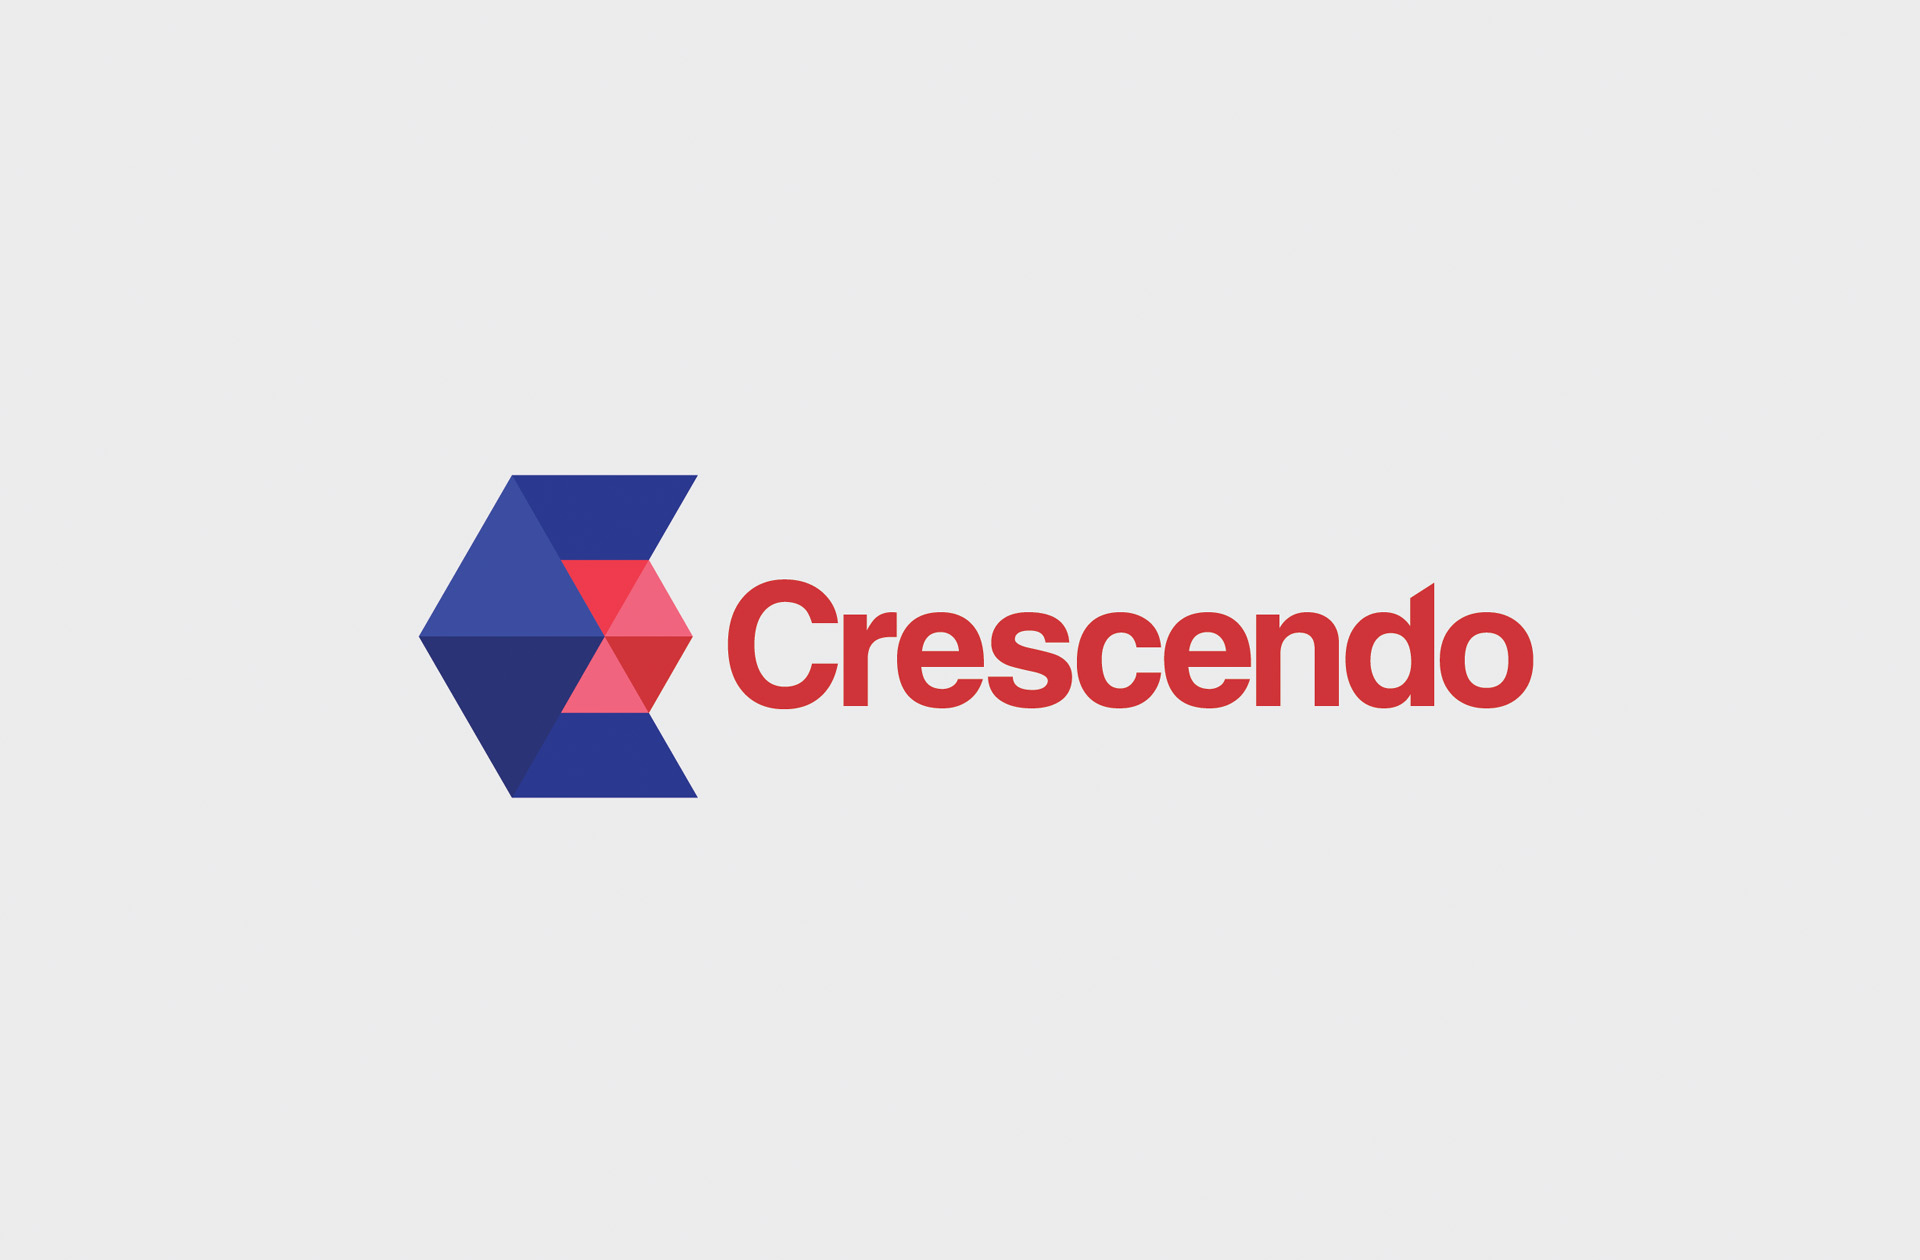 Crescendo Global Services